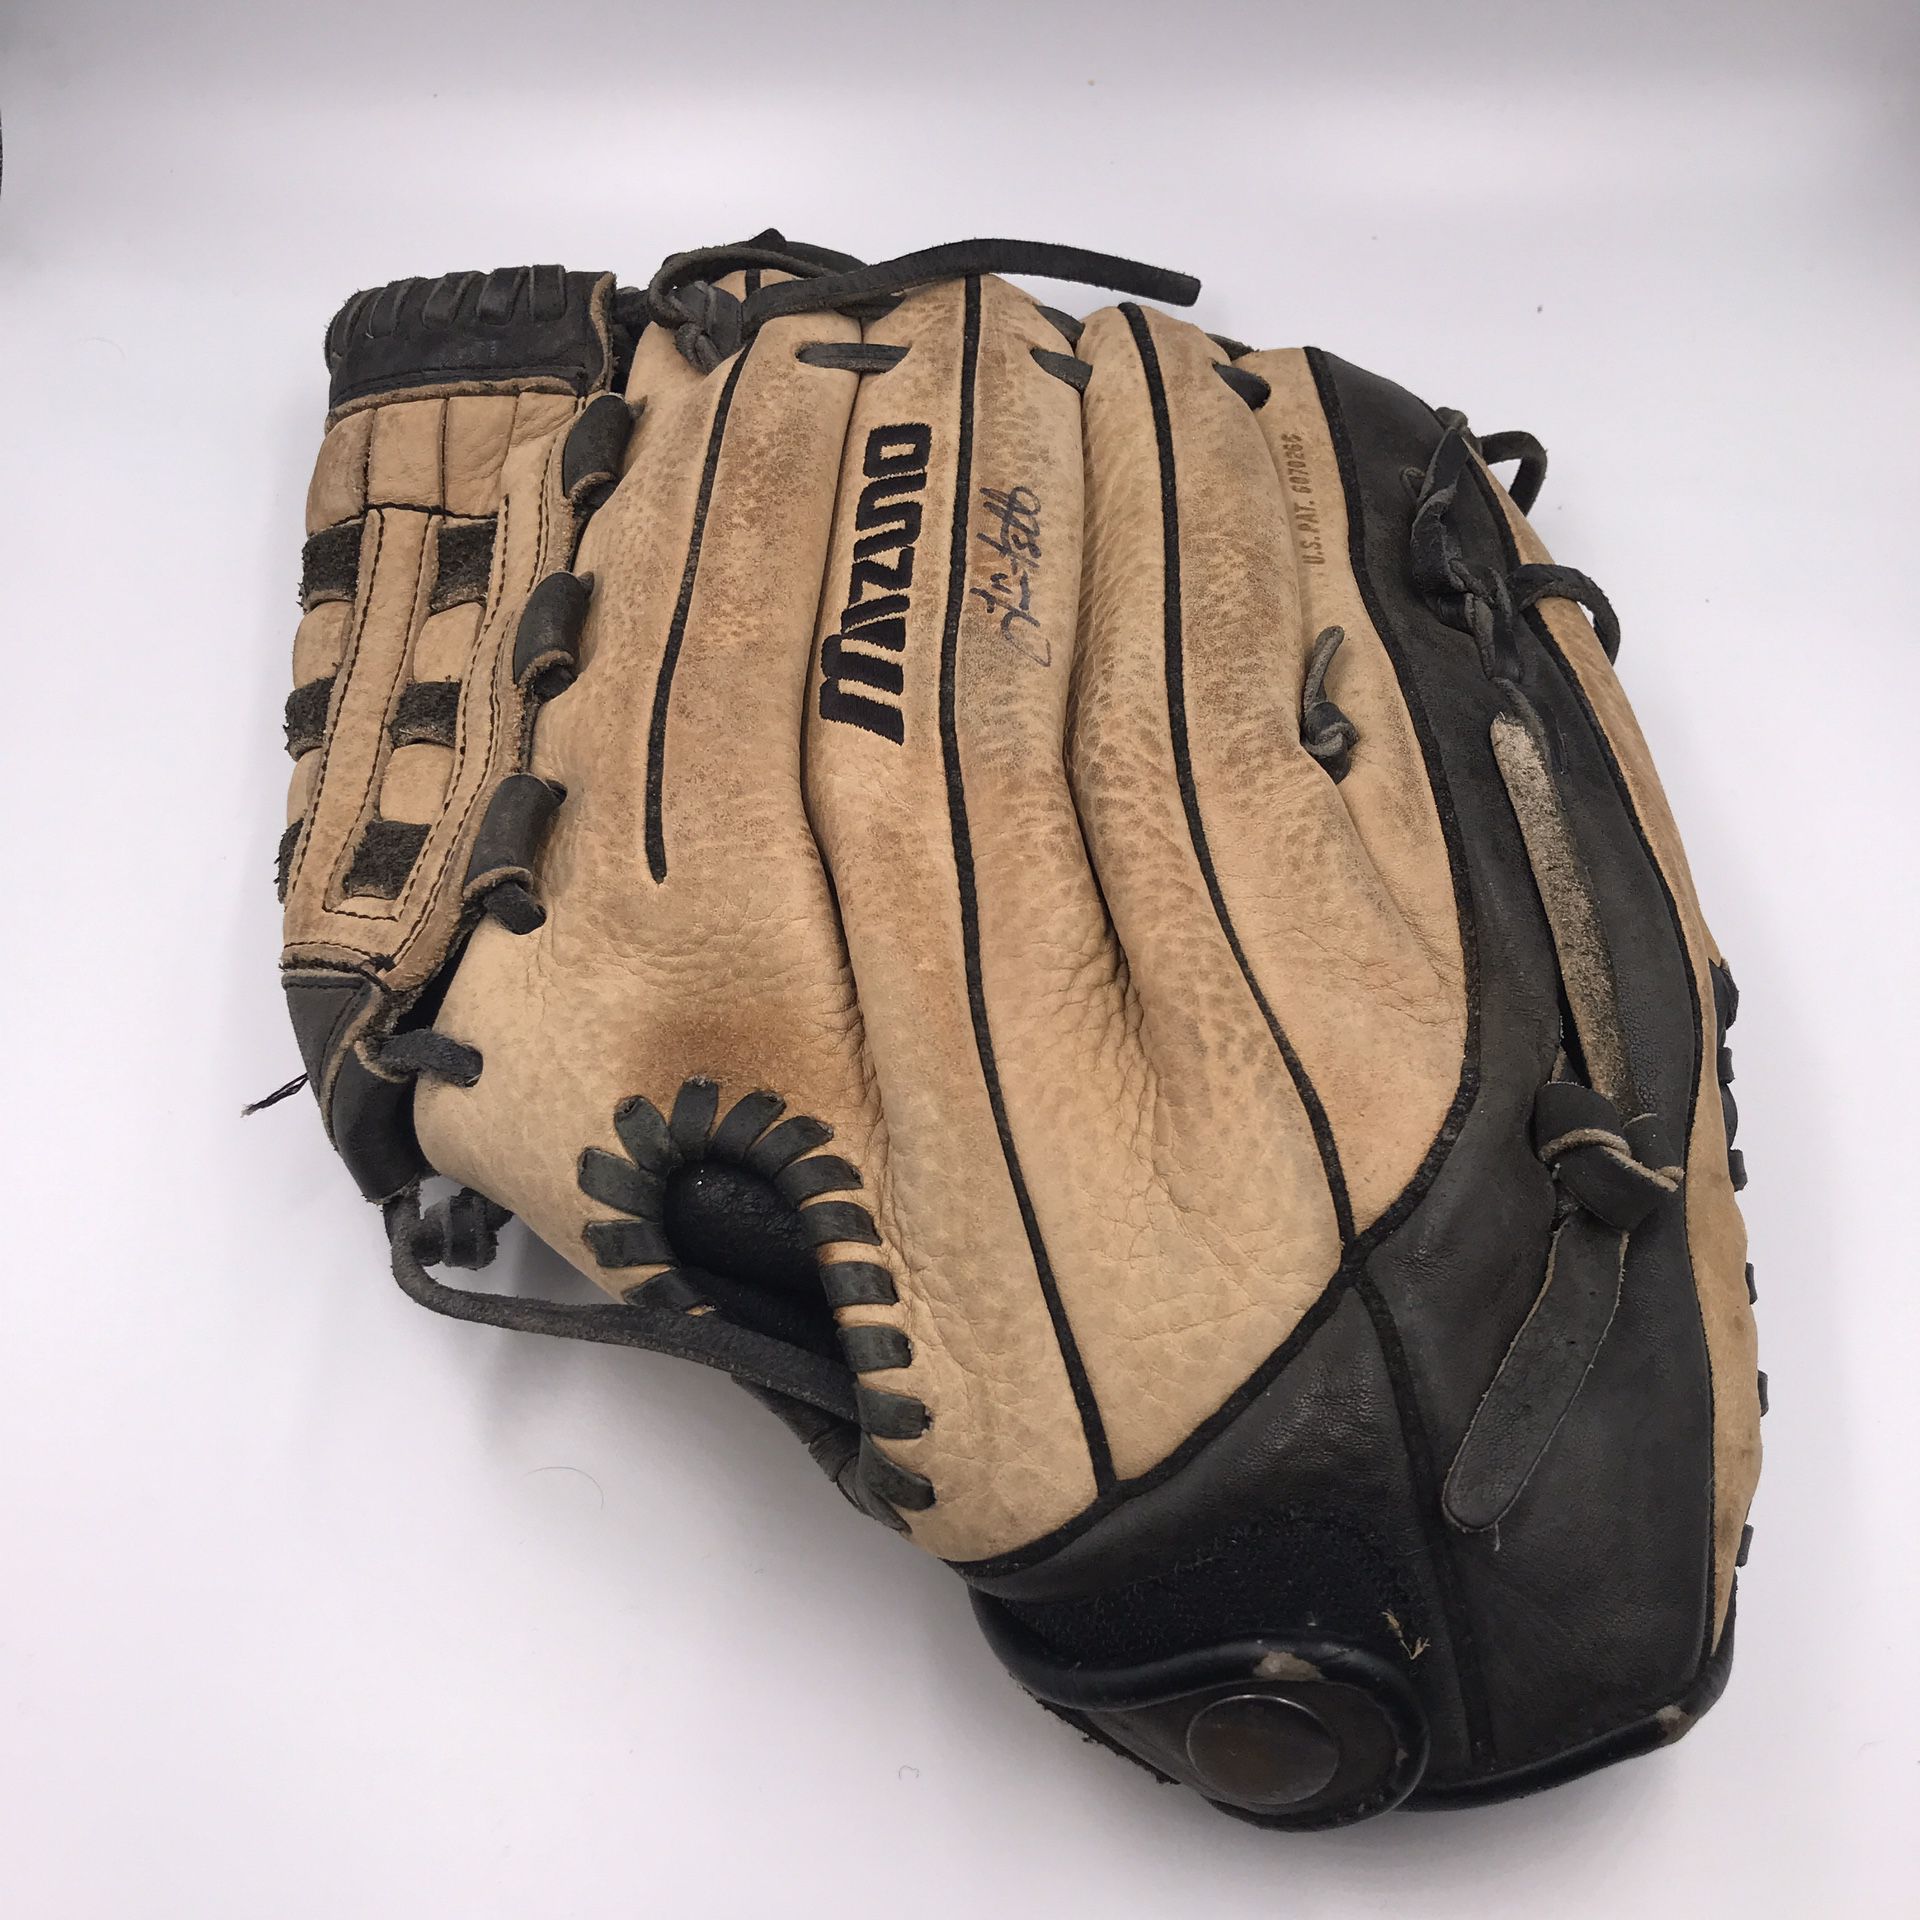 Mizuno baseball glove size 13